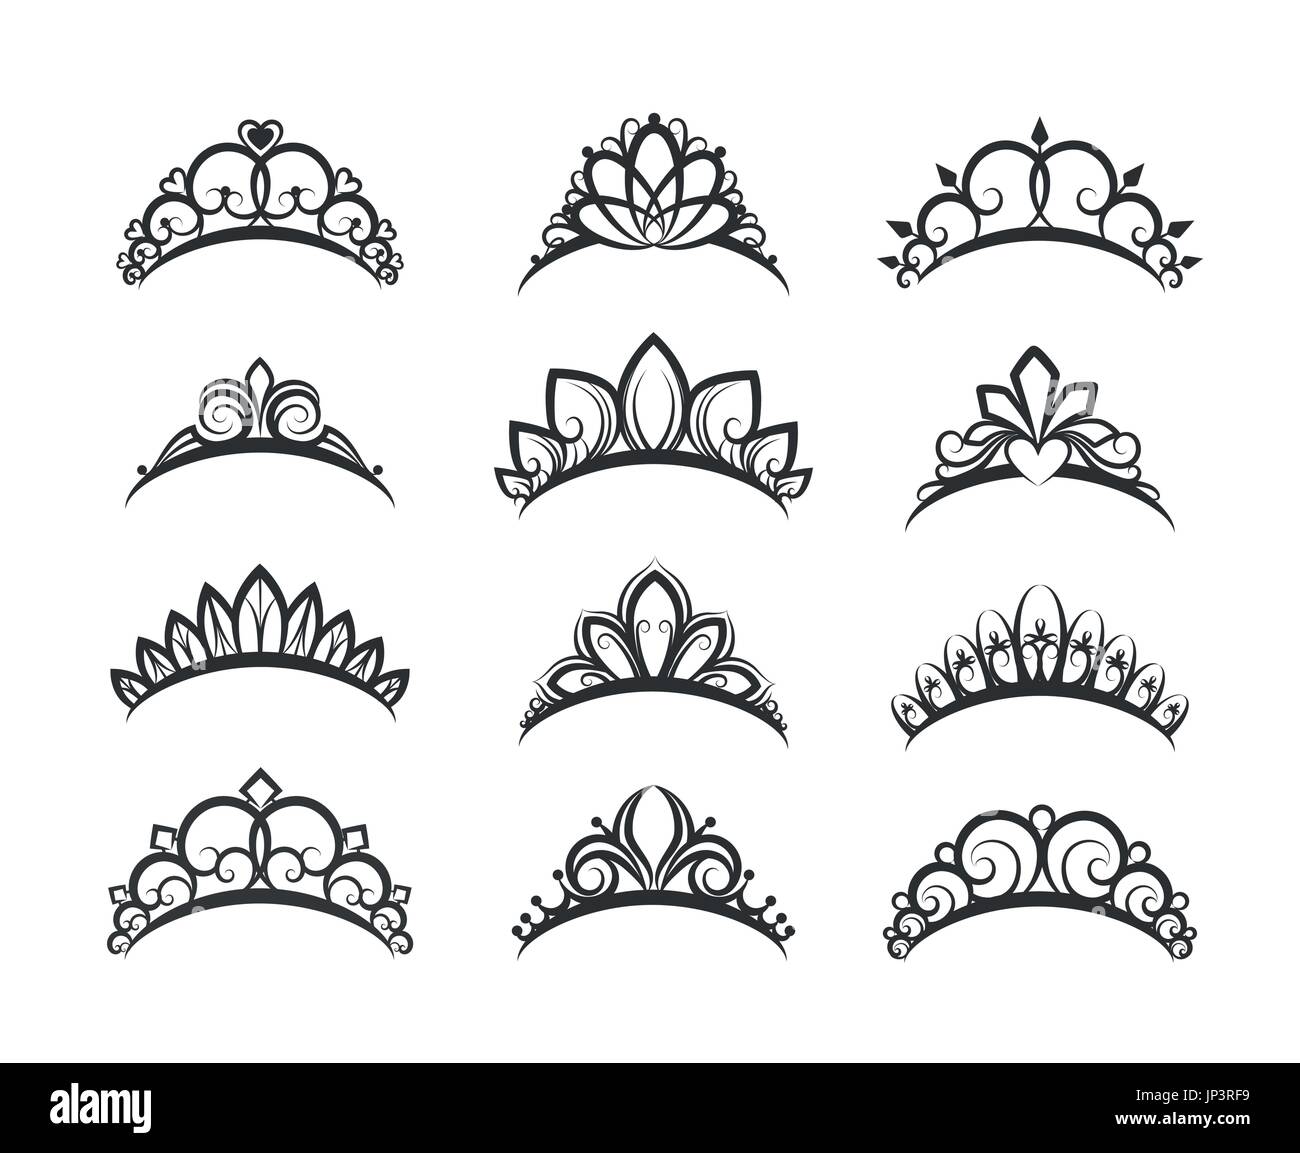 Vektor-Tiara-Set. Schöne Königin Diademe oder Prinzessin Krone Silhouetten für Hochzeitskarten und Vignetten Stock Vektor